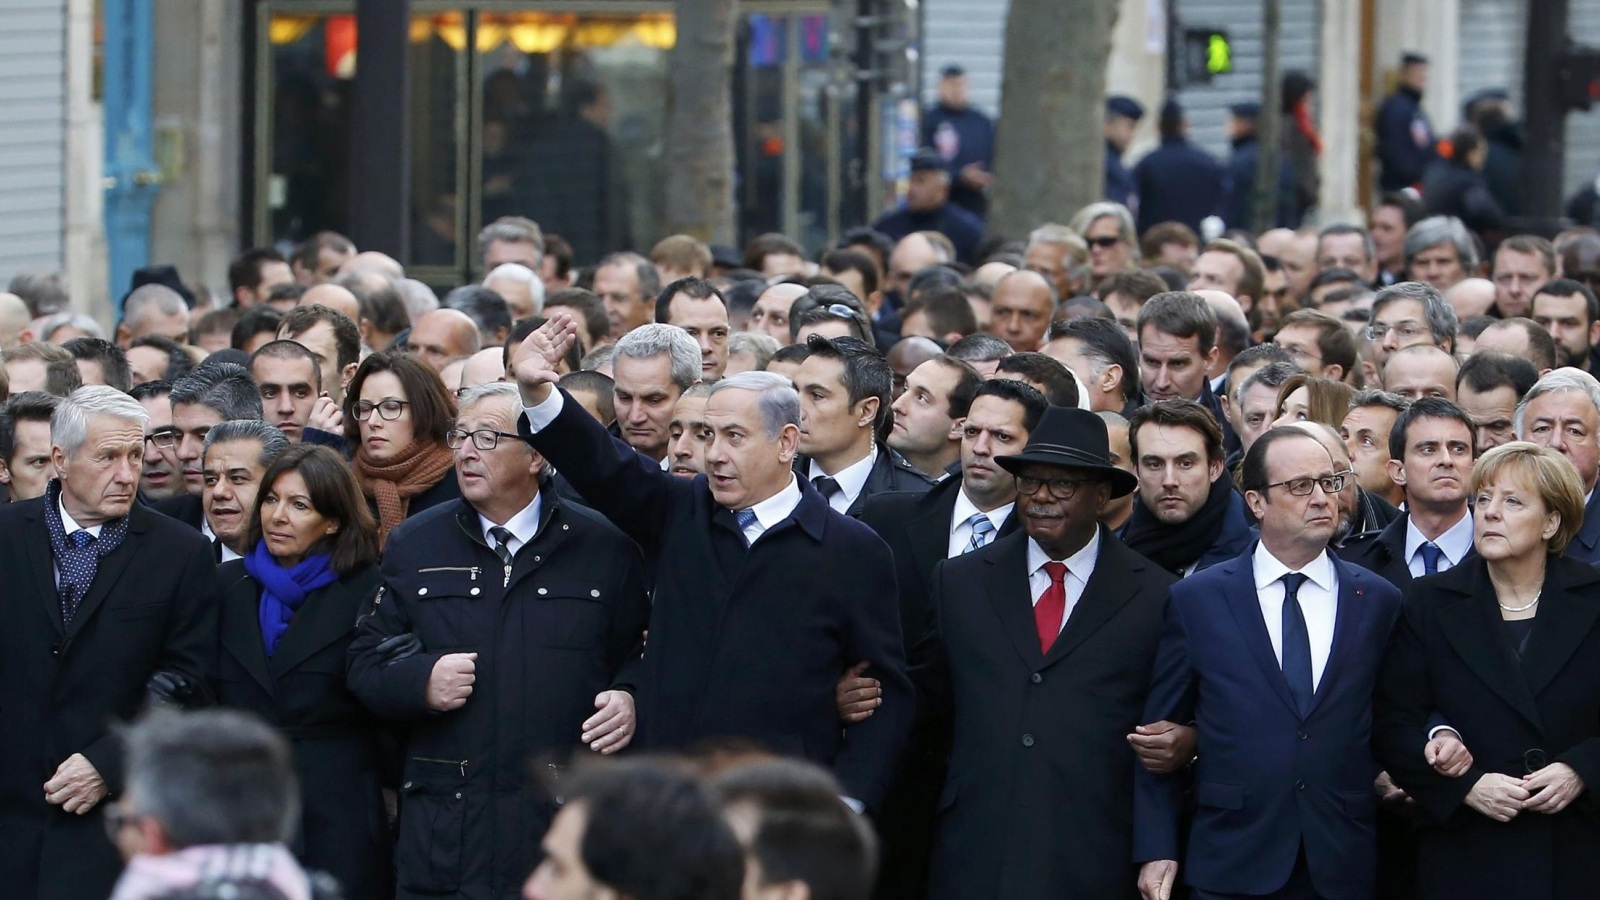 الرئيس فرانسوا هولاند (يمين) وقادة الدول المشاركين في مسيرة 11 يناير/كانون الثاني 2015 بباريس بعد حادثة شارلي إيبدو (رويترز)